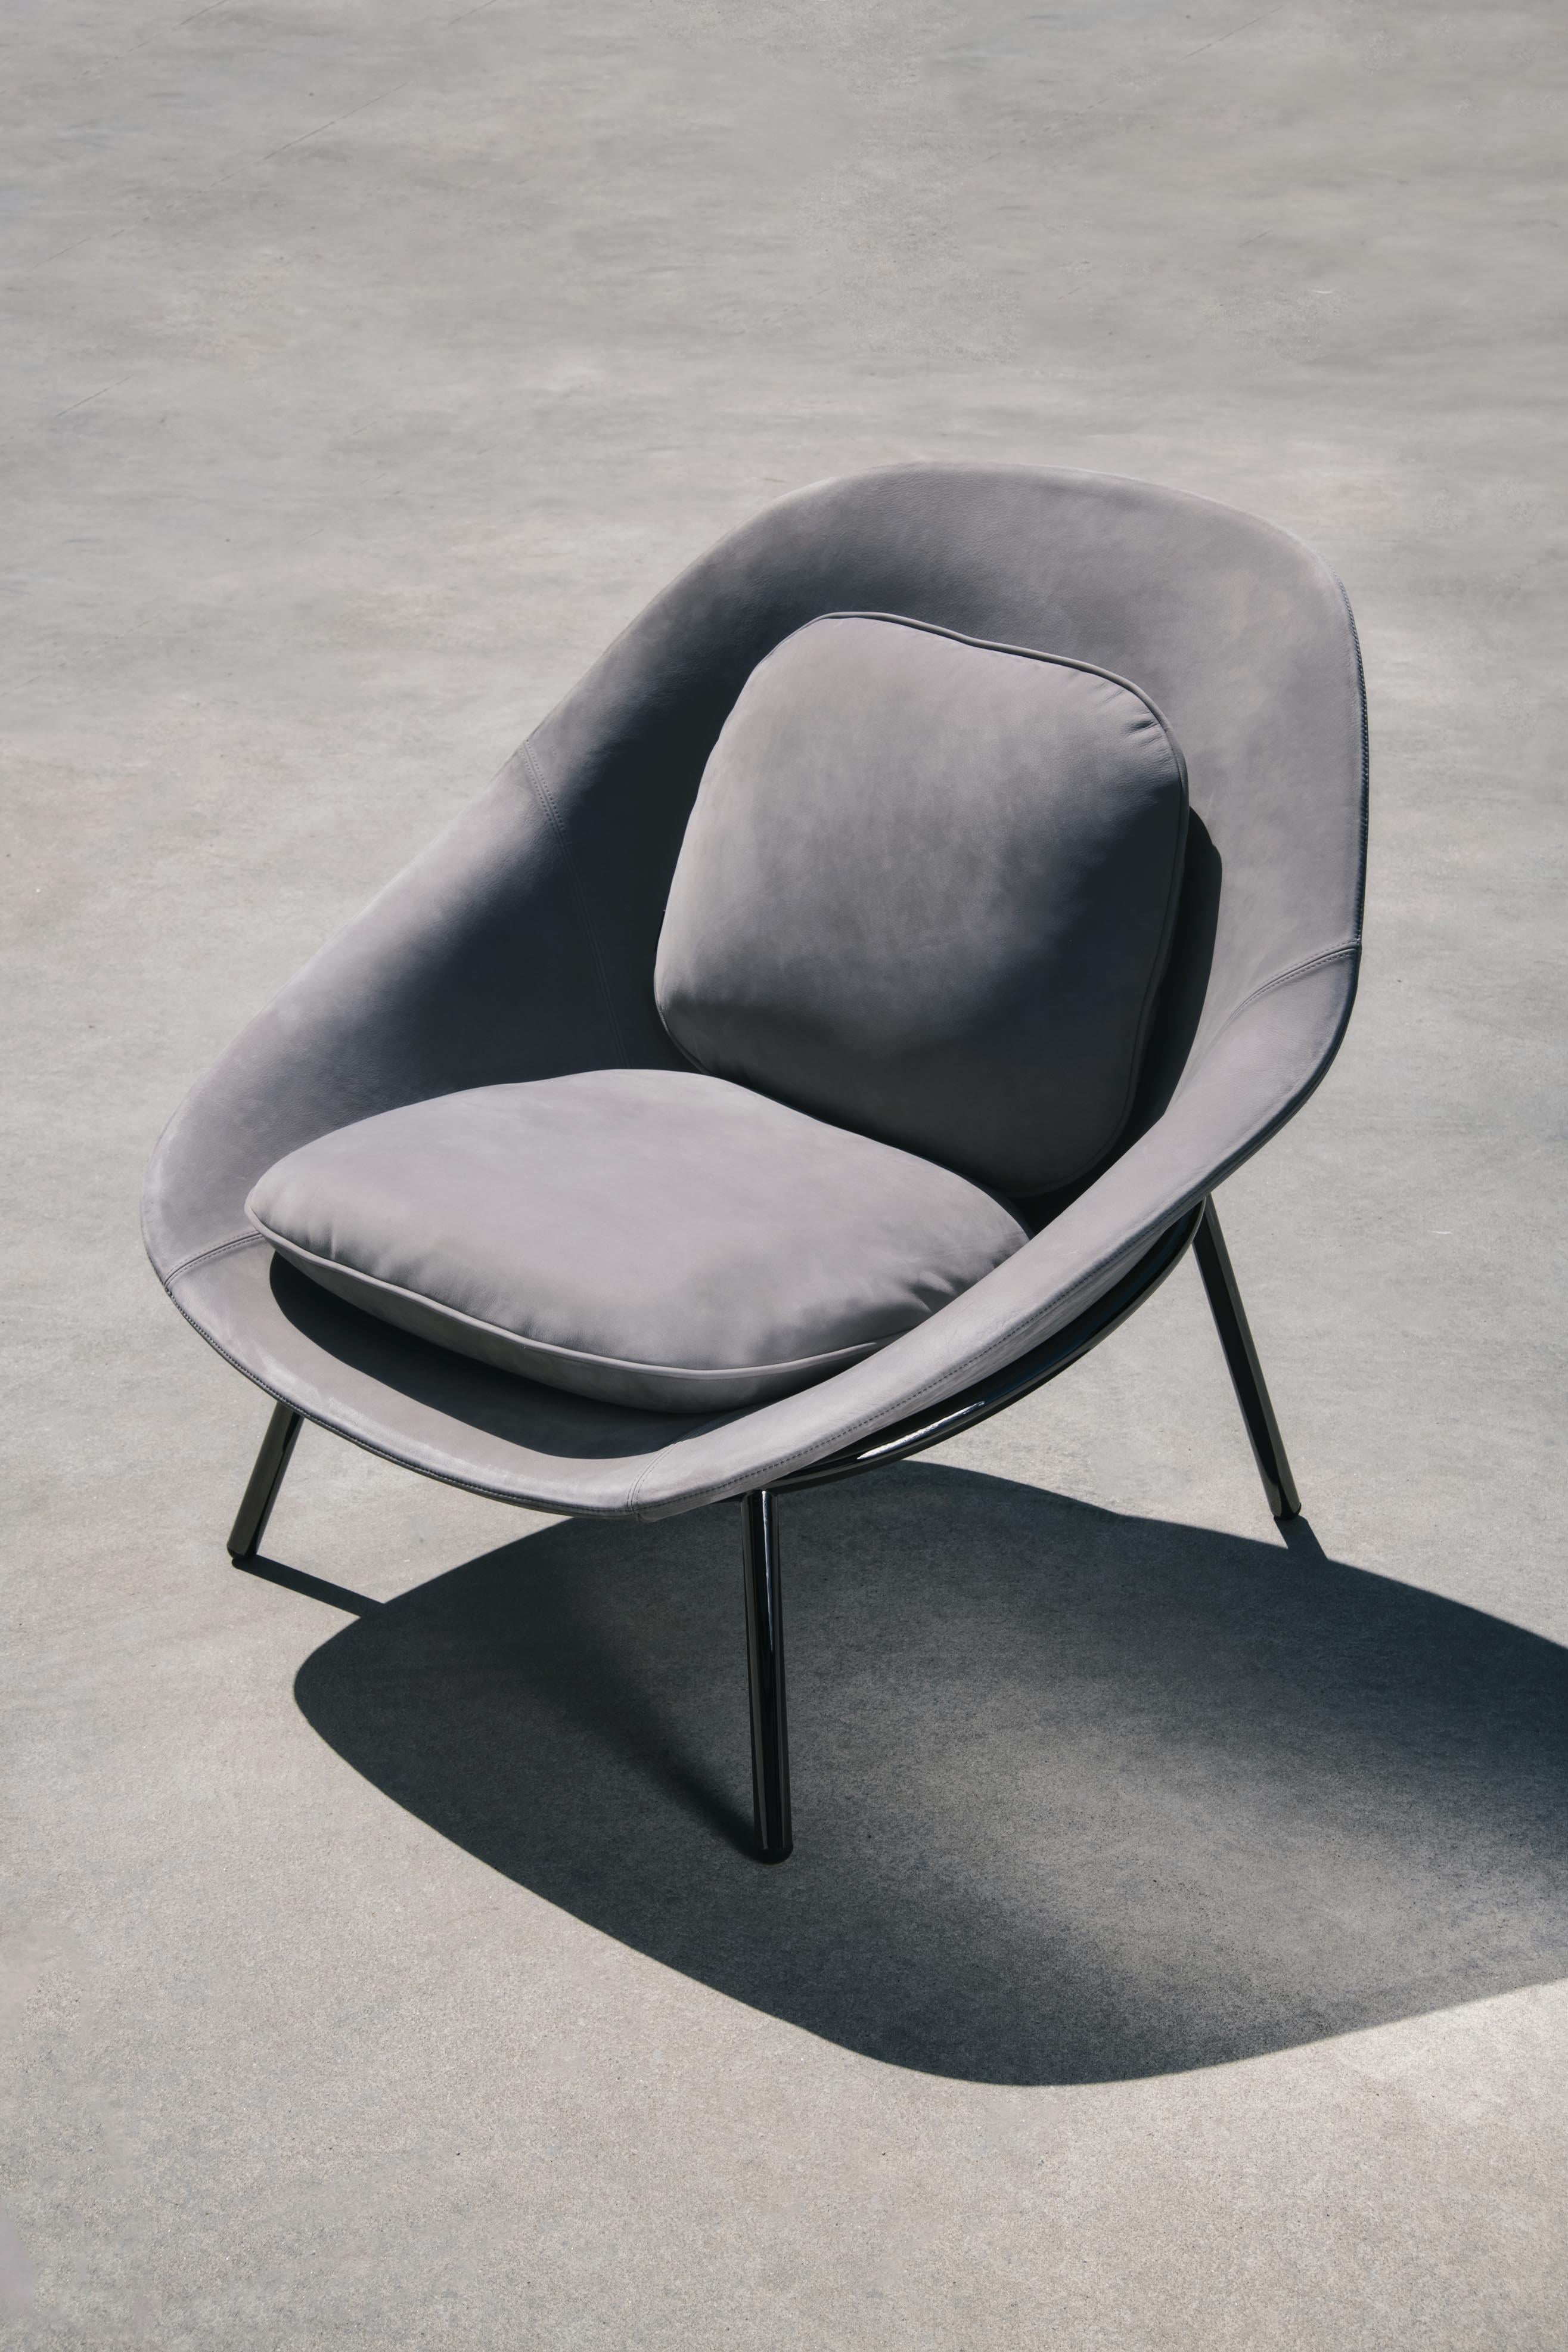 Contemporary Amphora Lounge Chair by Noé Duchaufour Lawrance